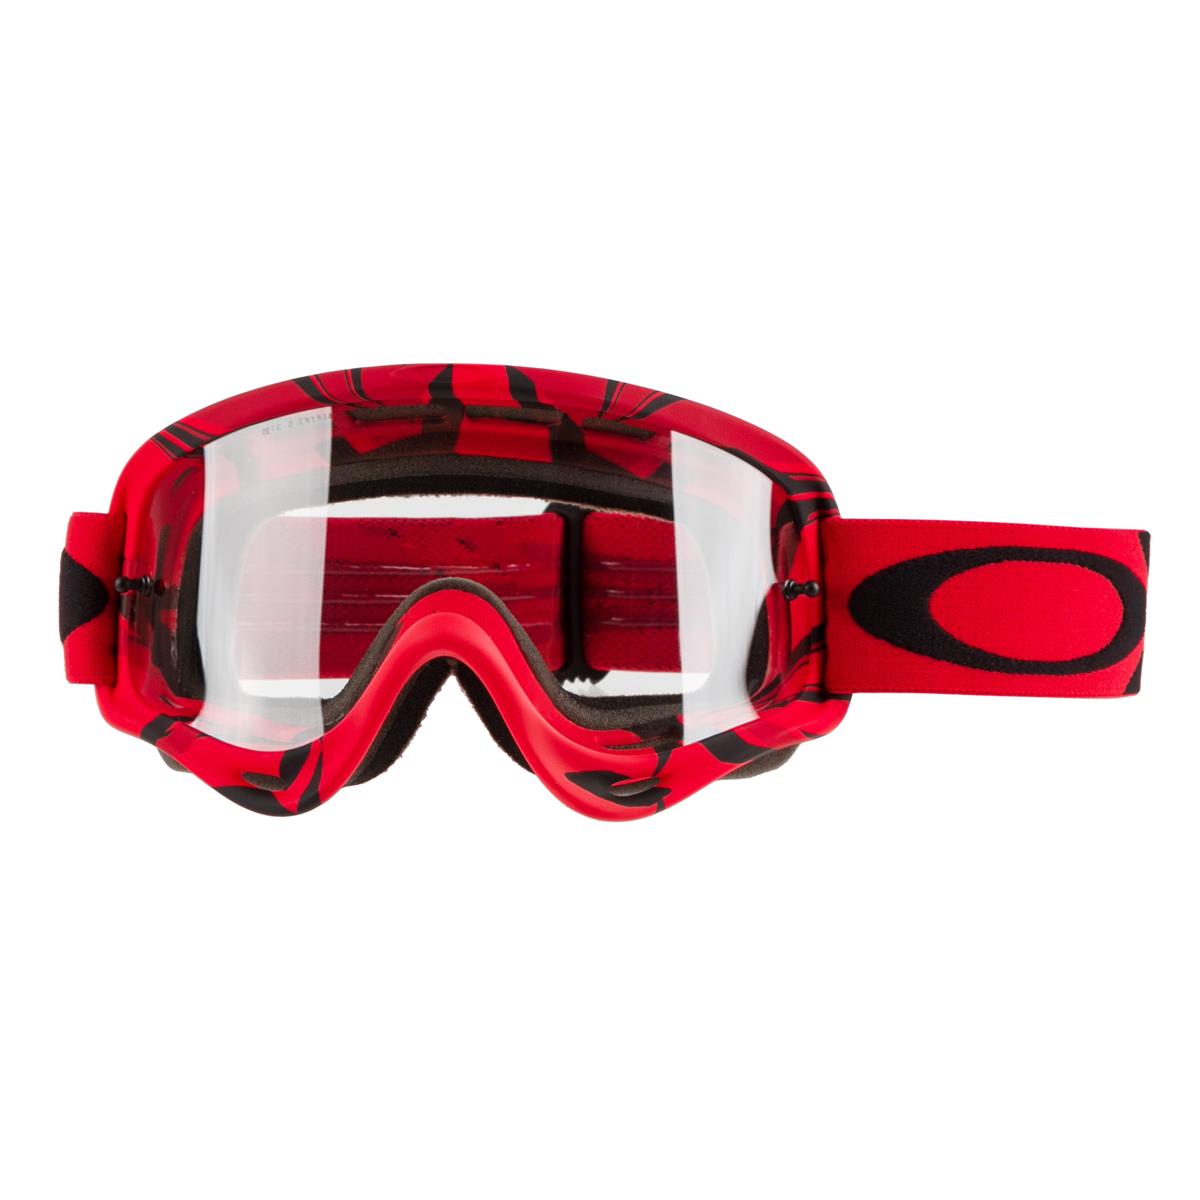 Oakley Masque O Frame MX Intimidator Red/Black - Clear Anti-Fog